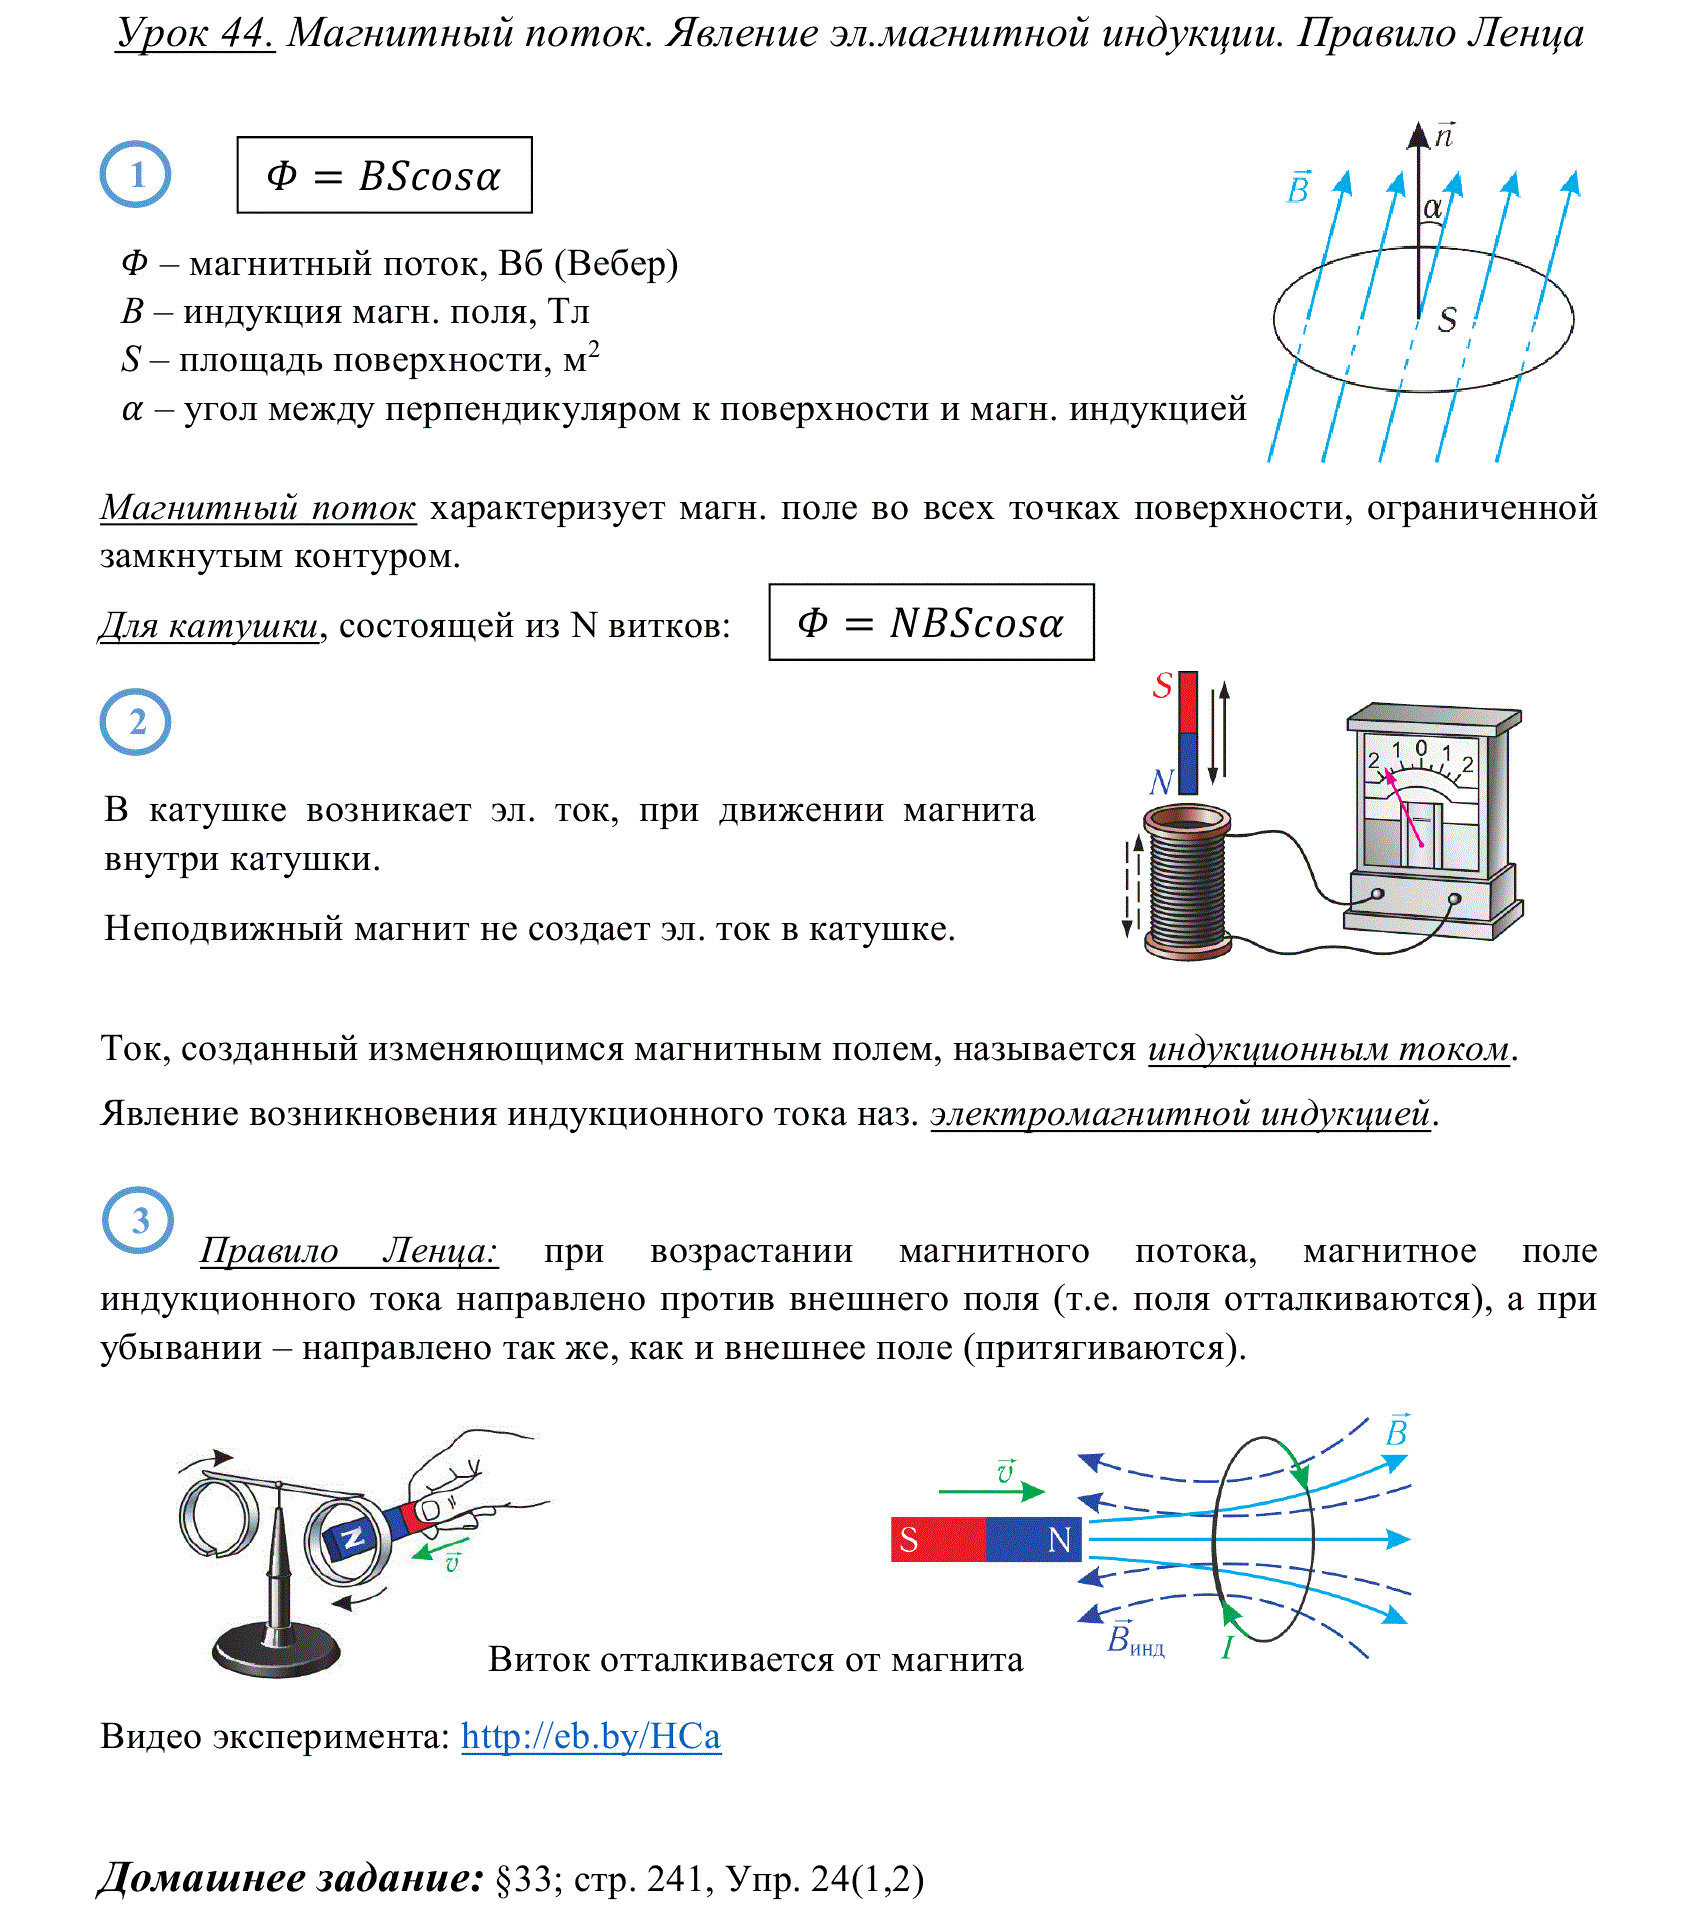 Основные формулы и методические рекомендации по решению задач на электромагнитную индукцию